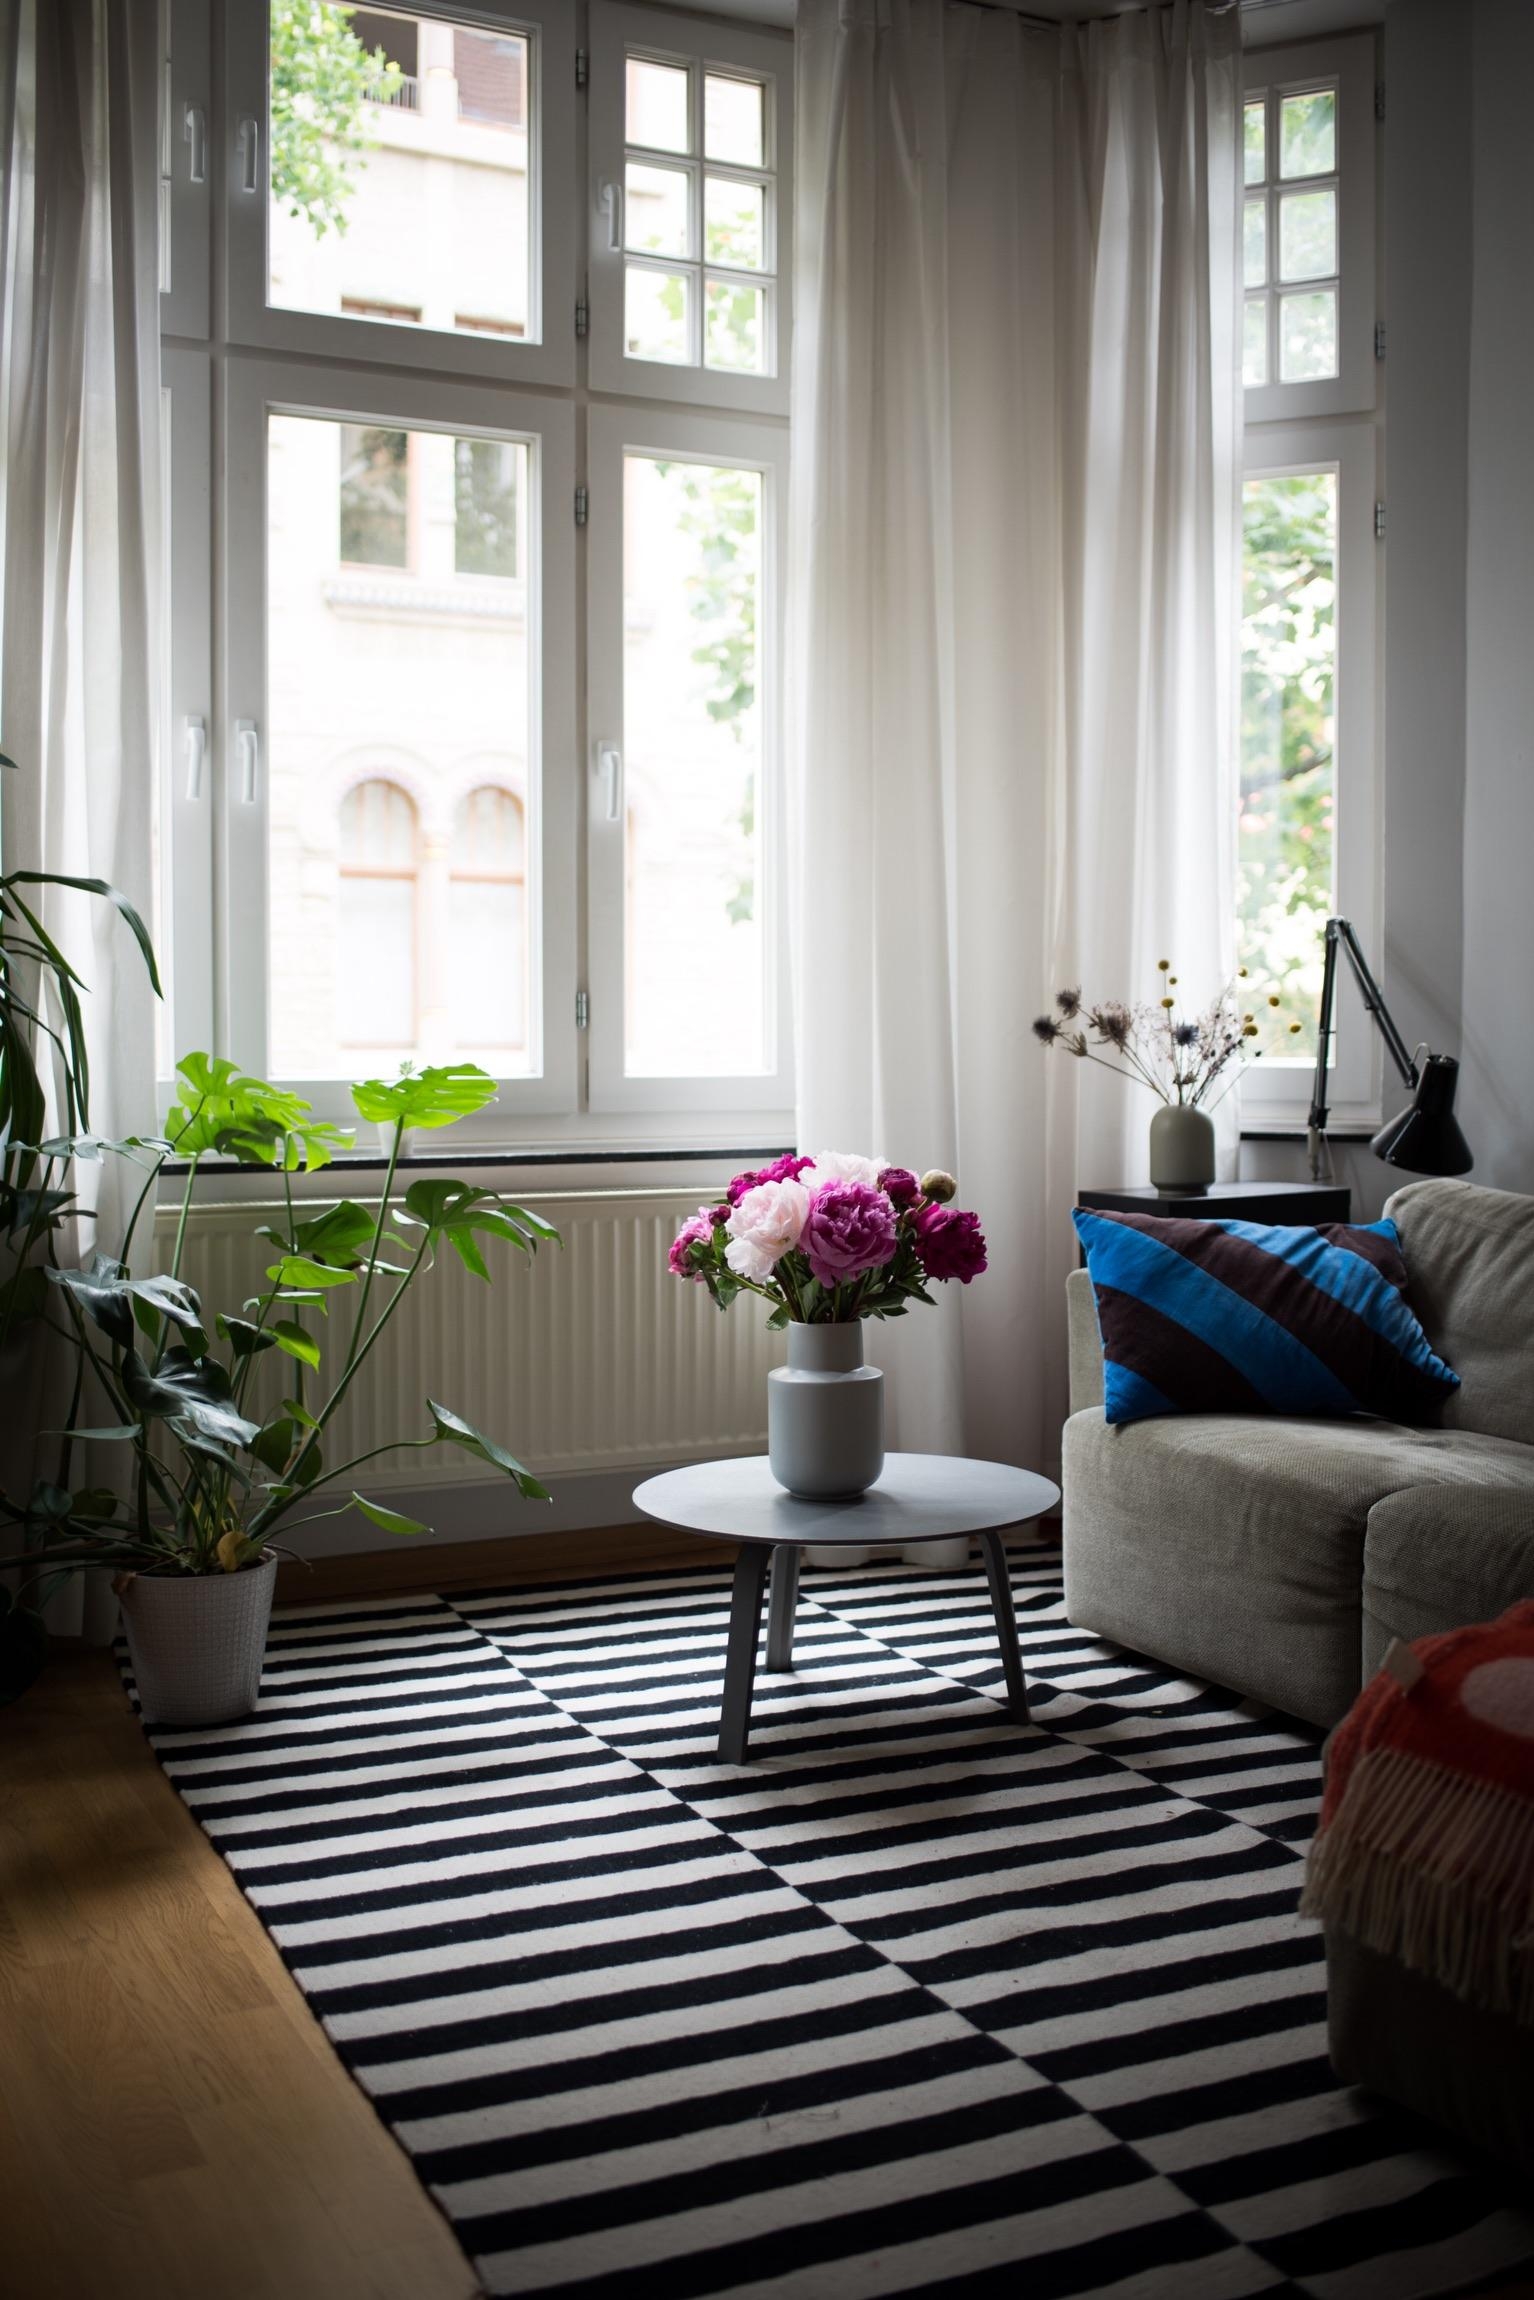 Schönen Mittwoch! #interior #wohnzimmer #interiorinspo #dekoration #altbau